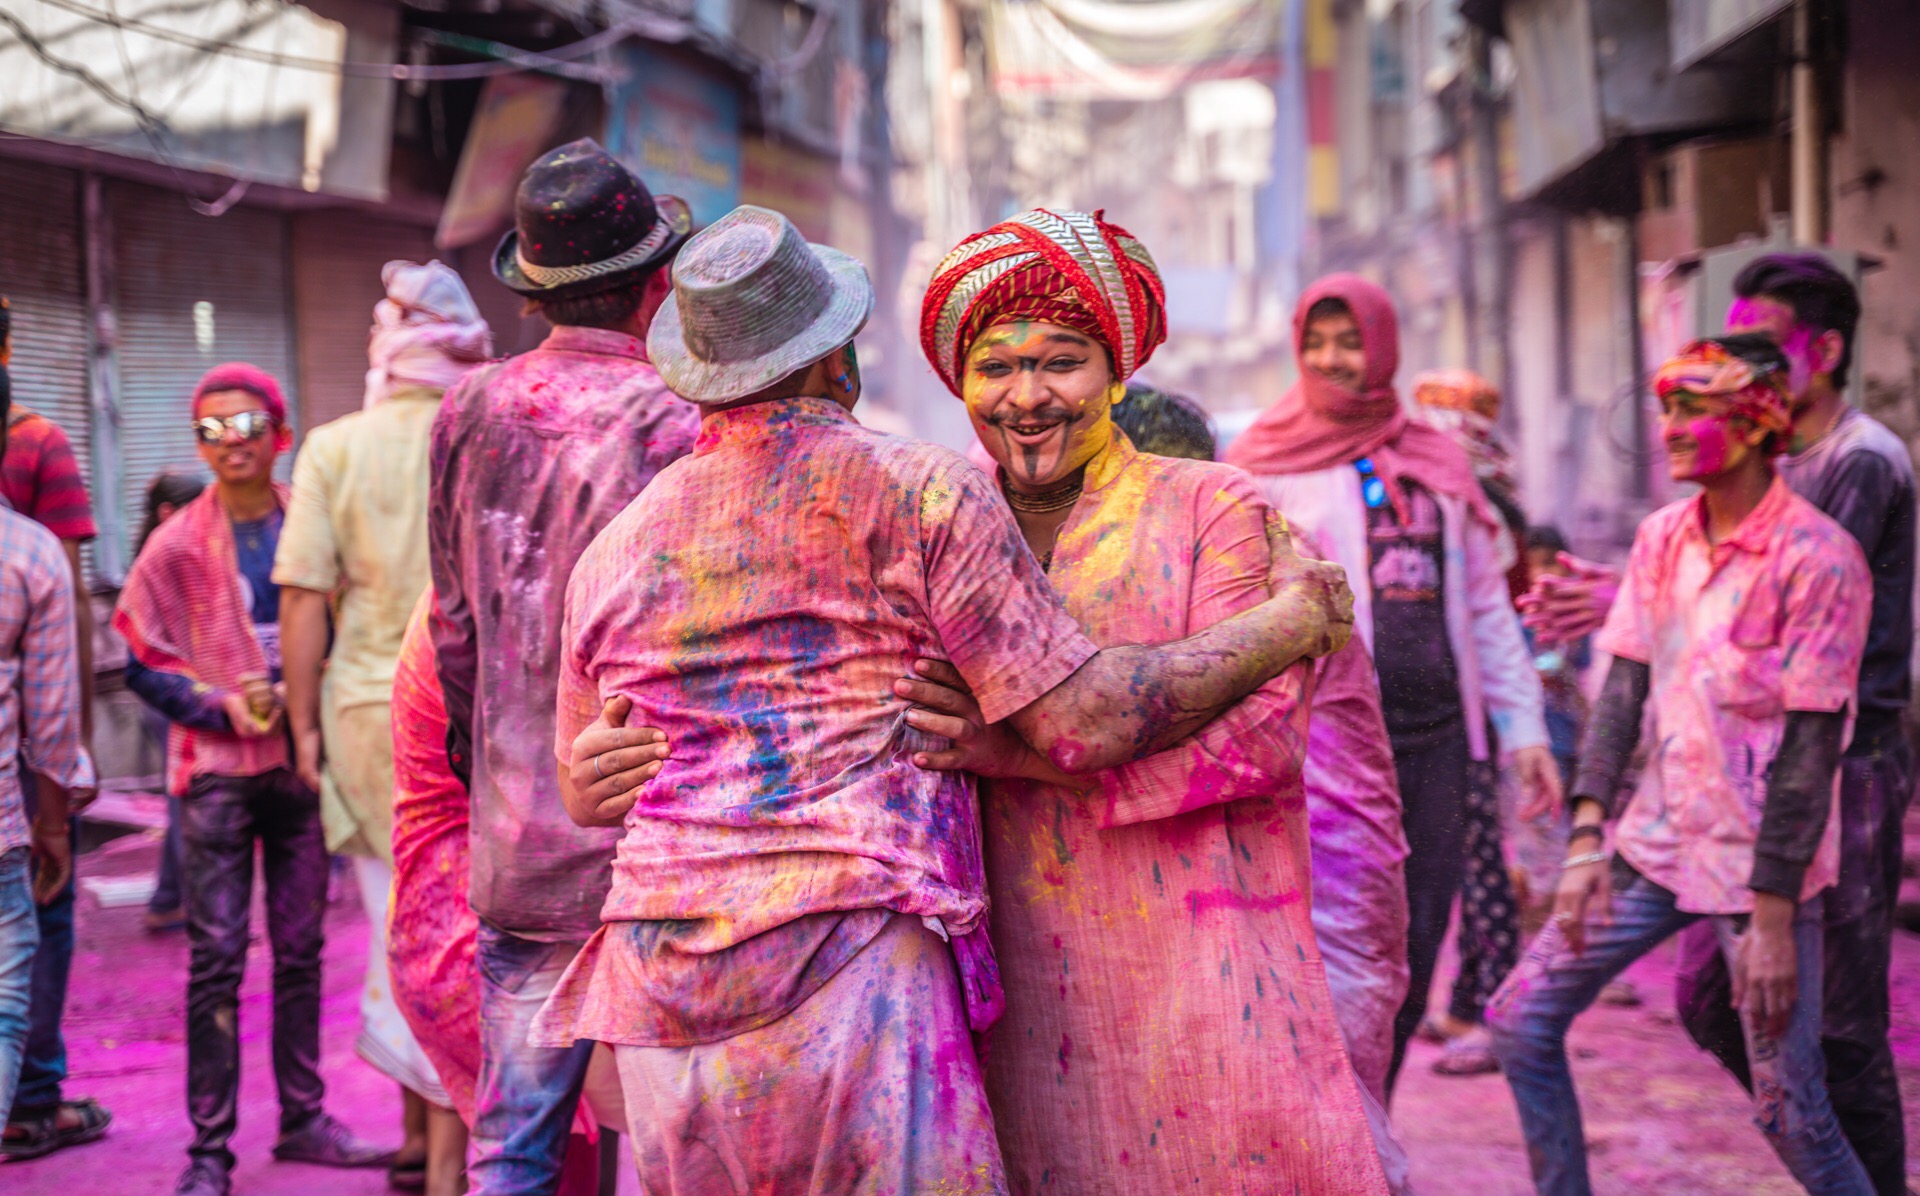 印度洒红节是印度之旅绝对深刻的两天行程。马图拉全城商铺关门，所有人汇聚在大街小巷，唱歌跳舞，泼洒花粉